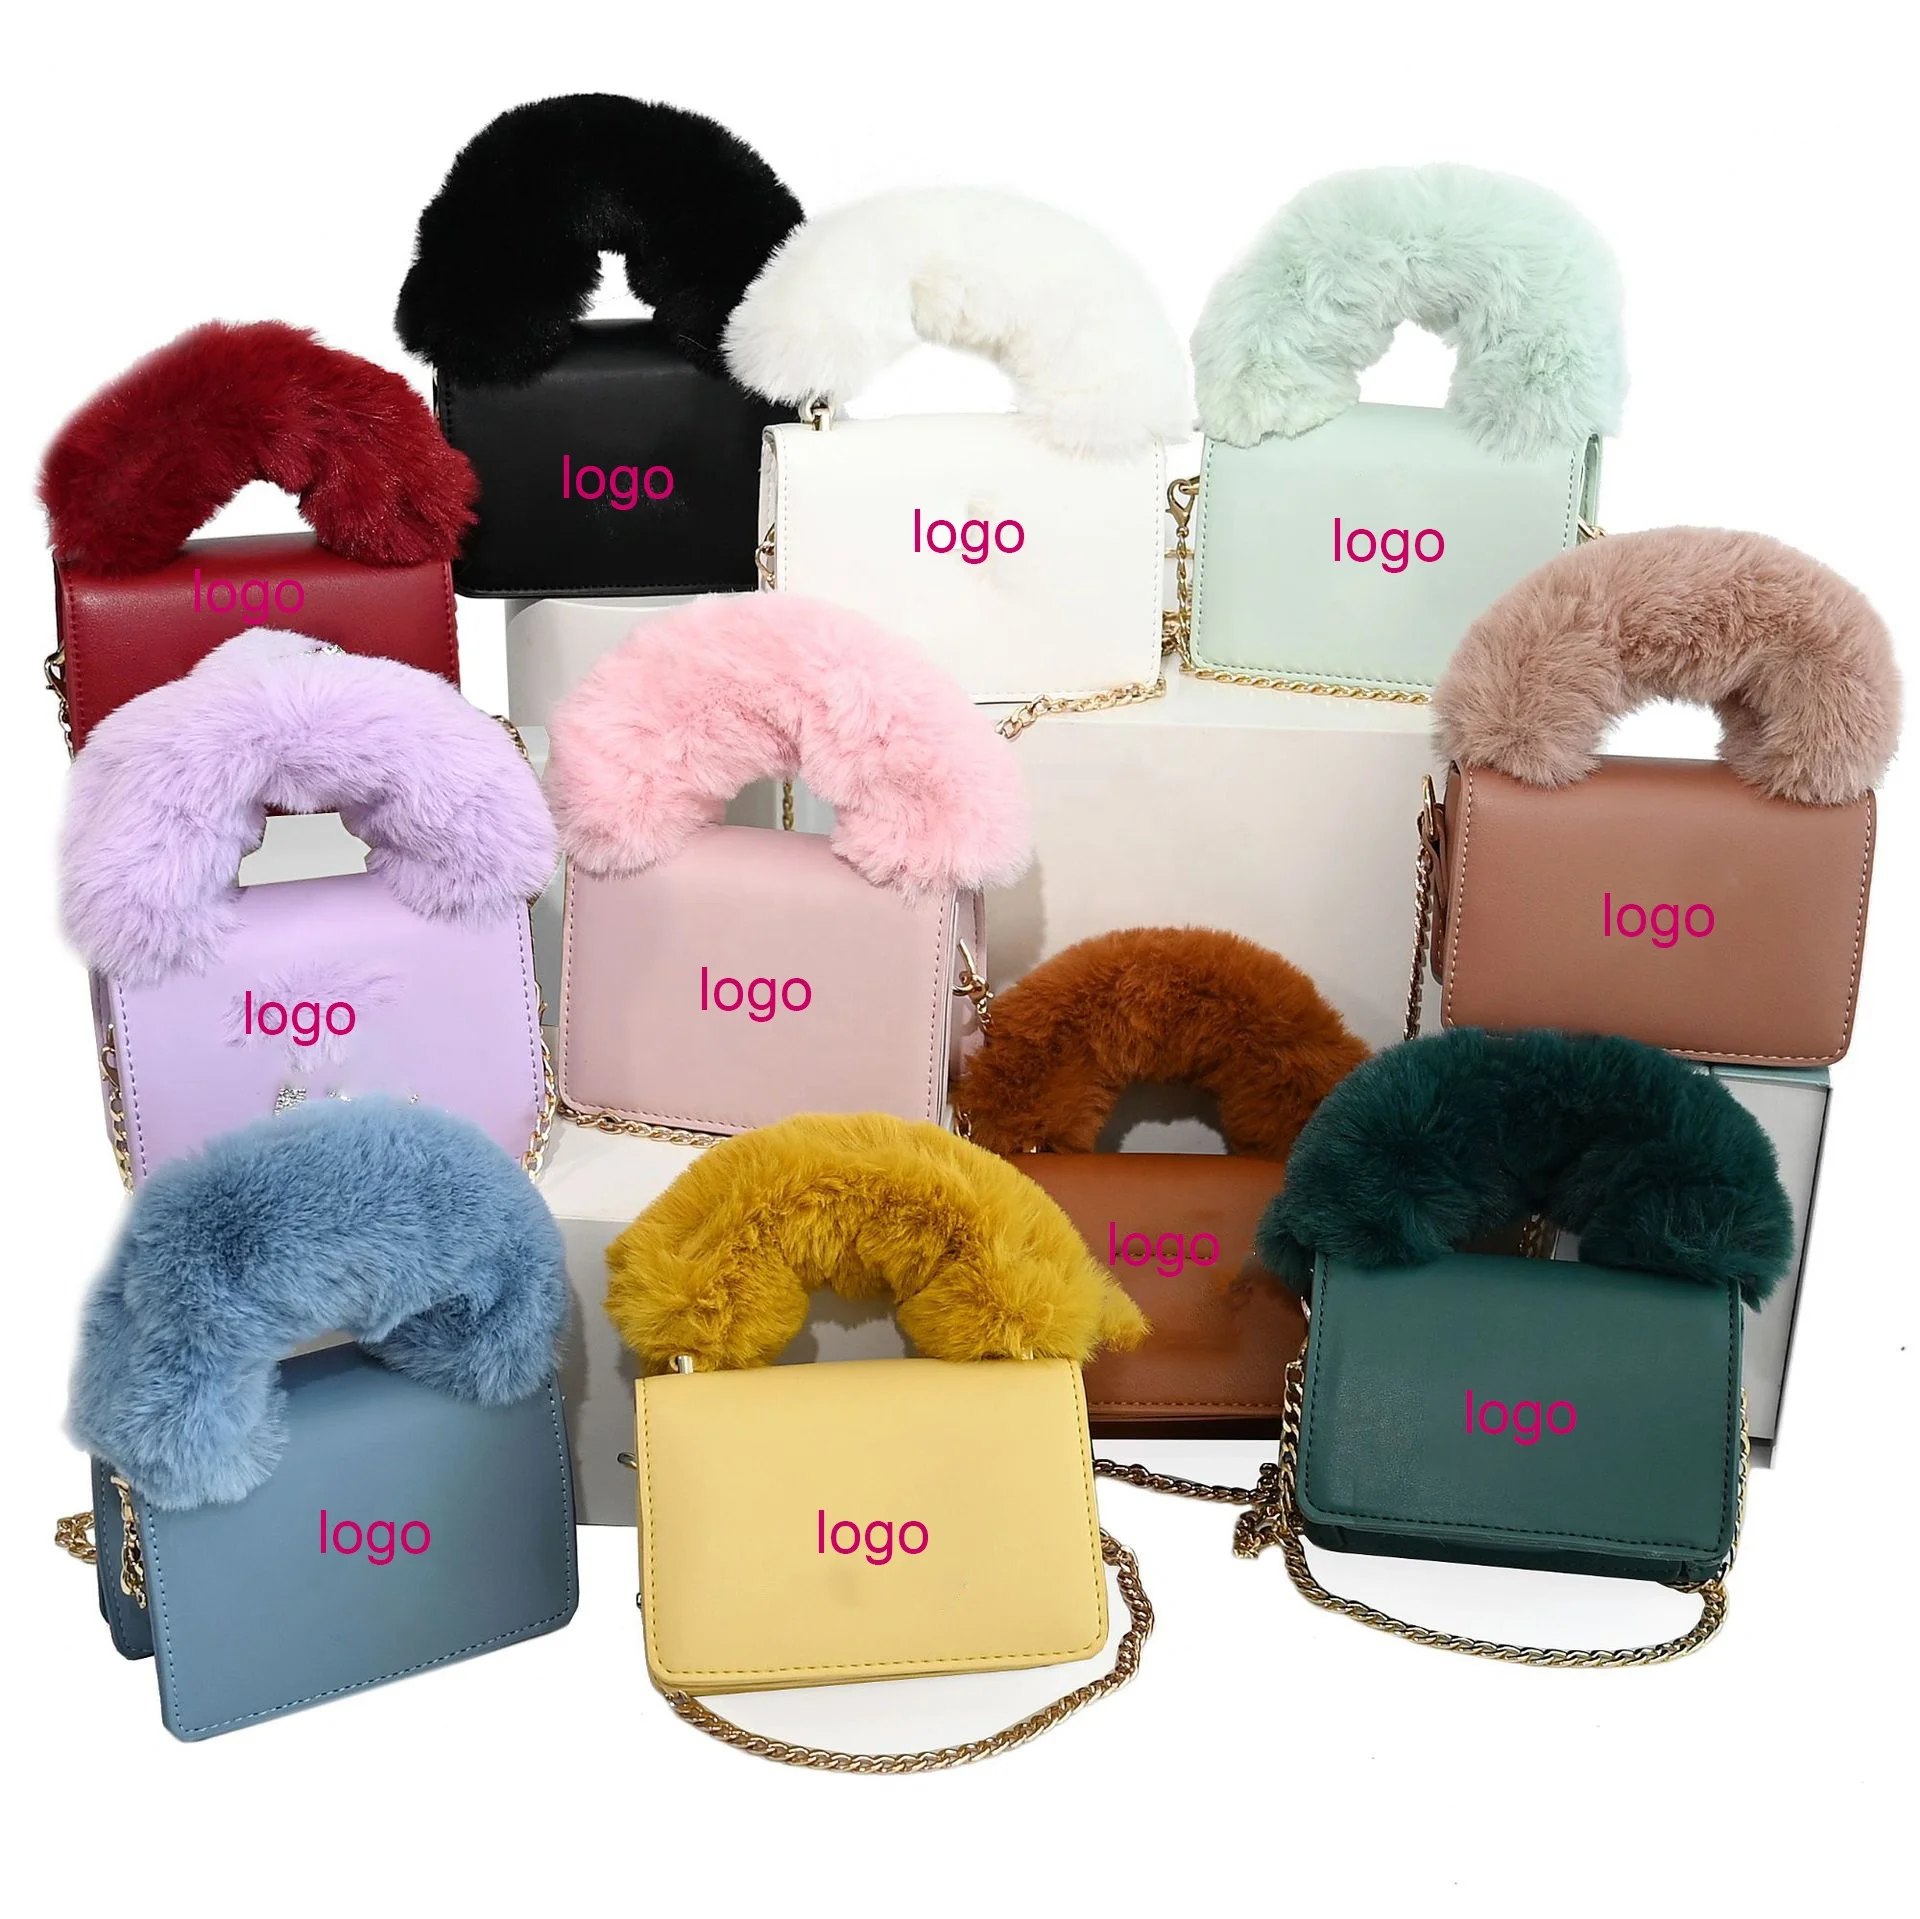 

2021 Women Handbag Vendors Soft Faux Fur Lady Handbags Luxury Ladies Handbags Fluffy Fur Purses Fashion Ladies Hand Bags Purses, 11 color options